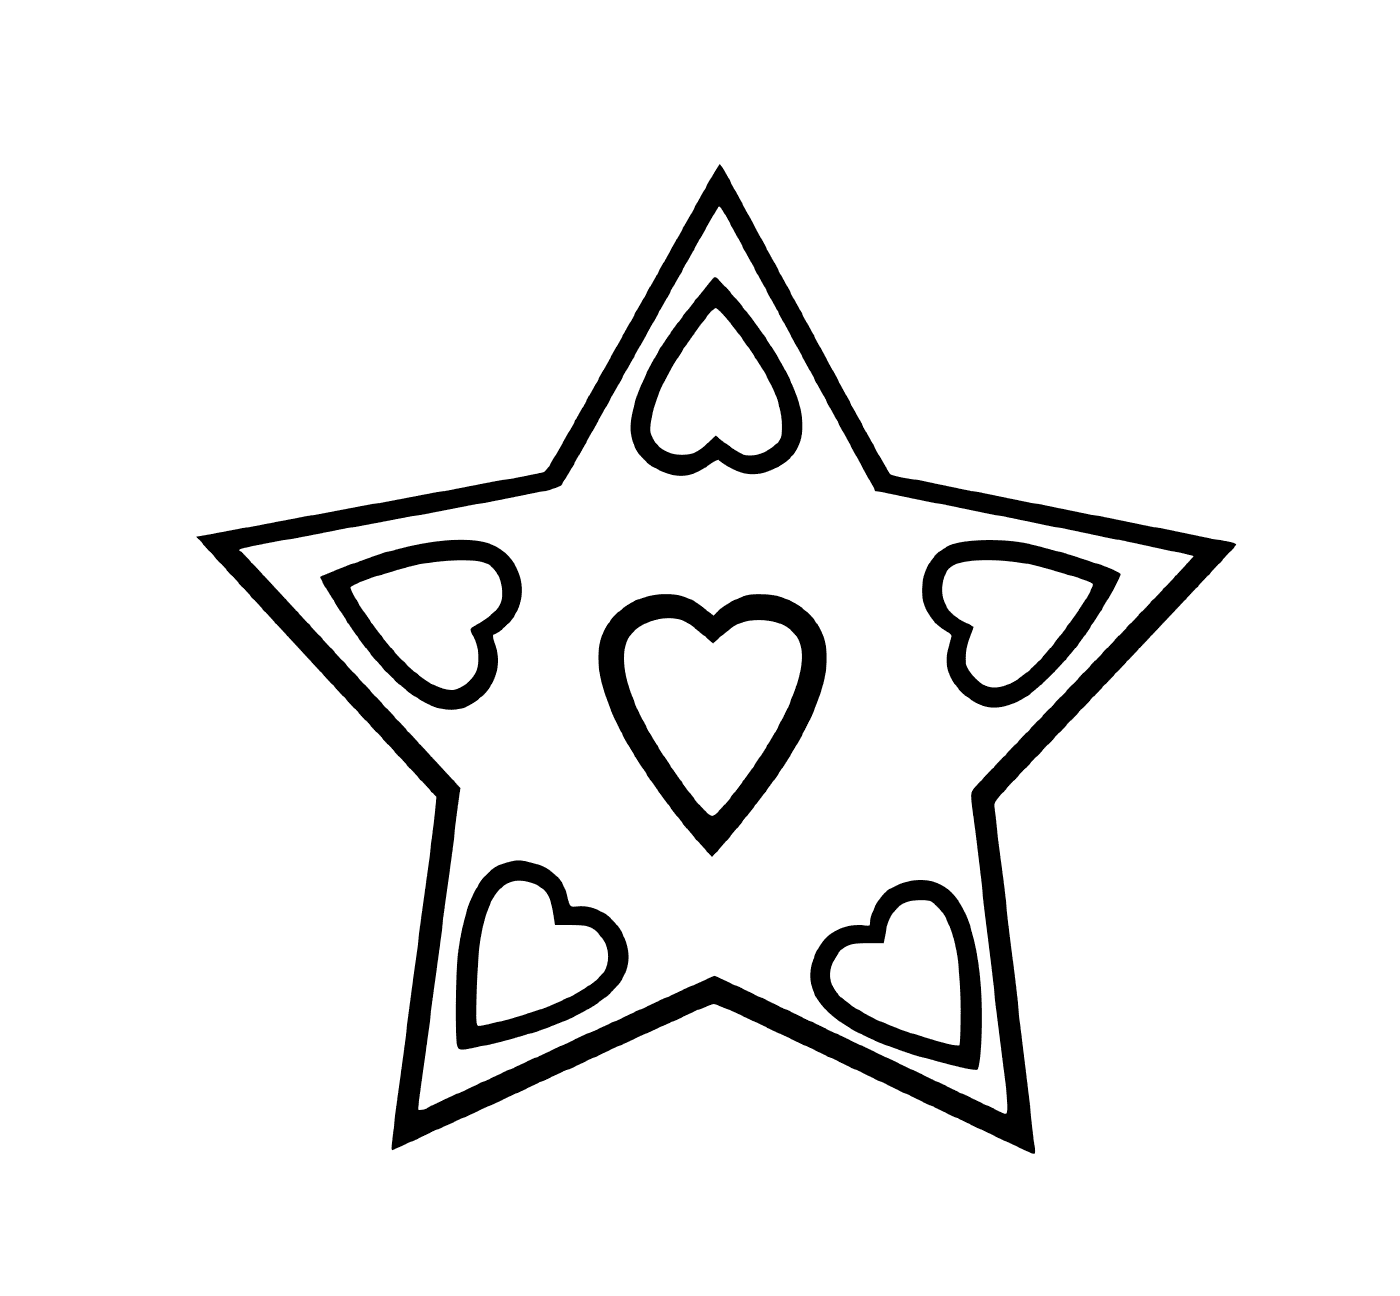  Una estrella rodeada de corazones 